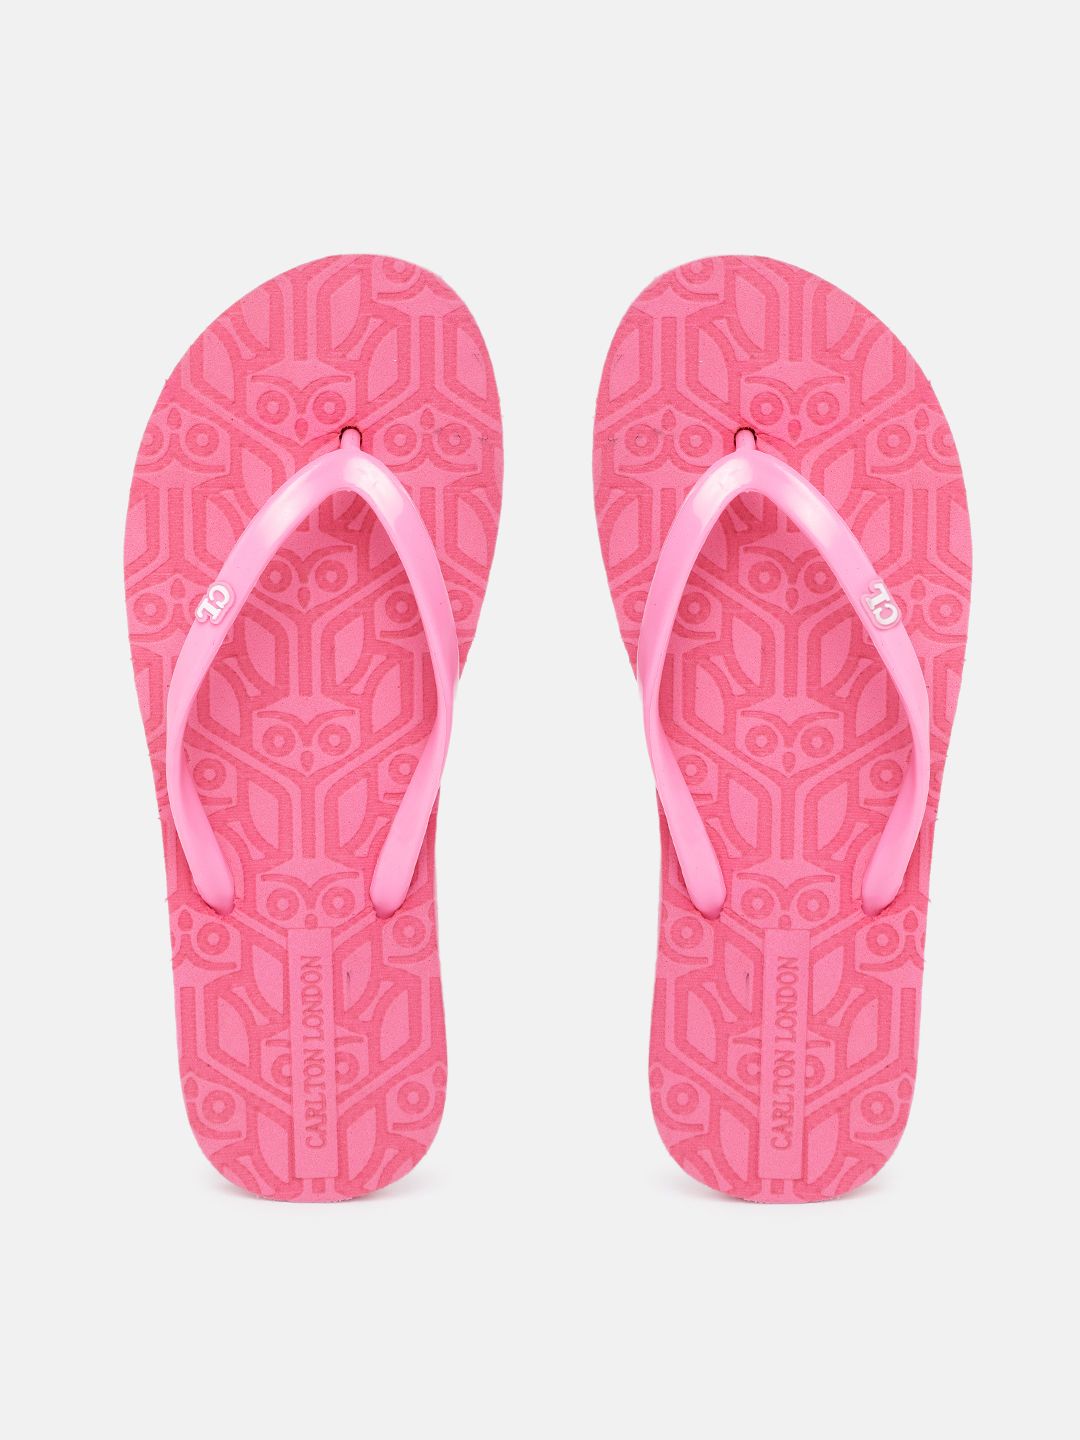 Carlton London Women Pink Printed Thong Flip-Flops Price in India